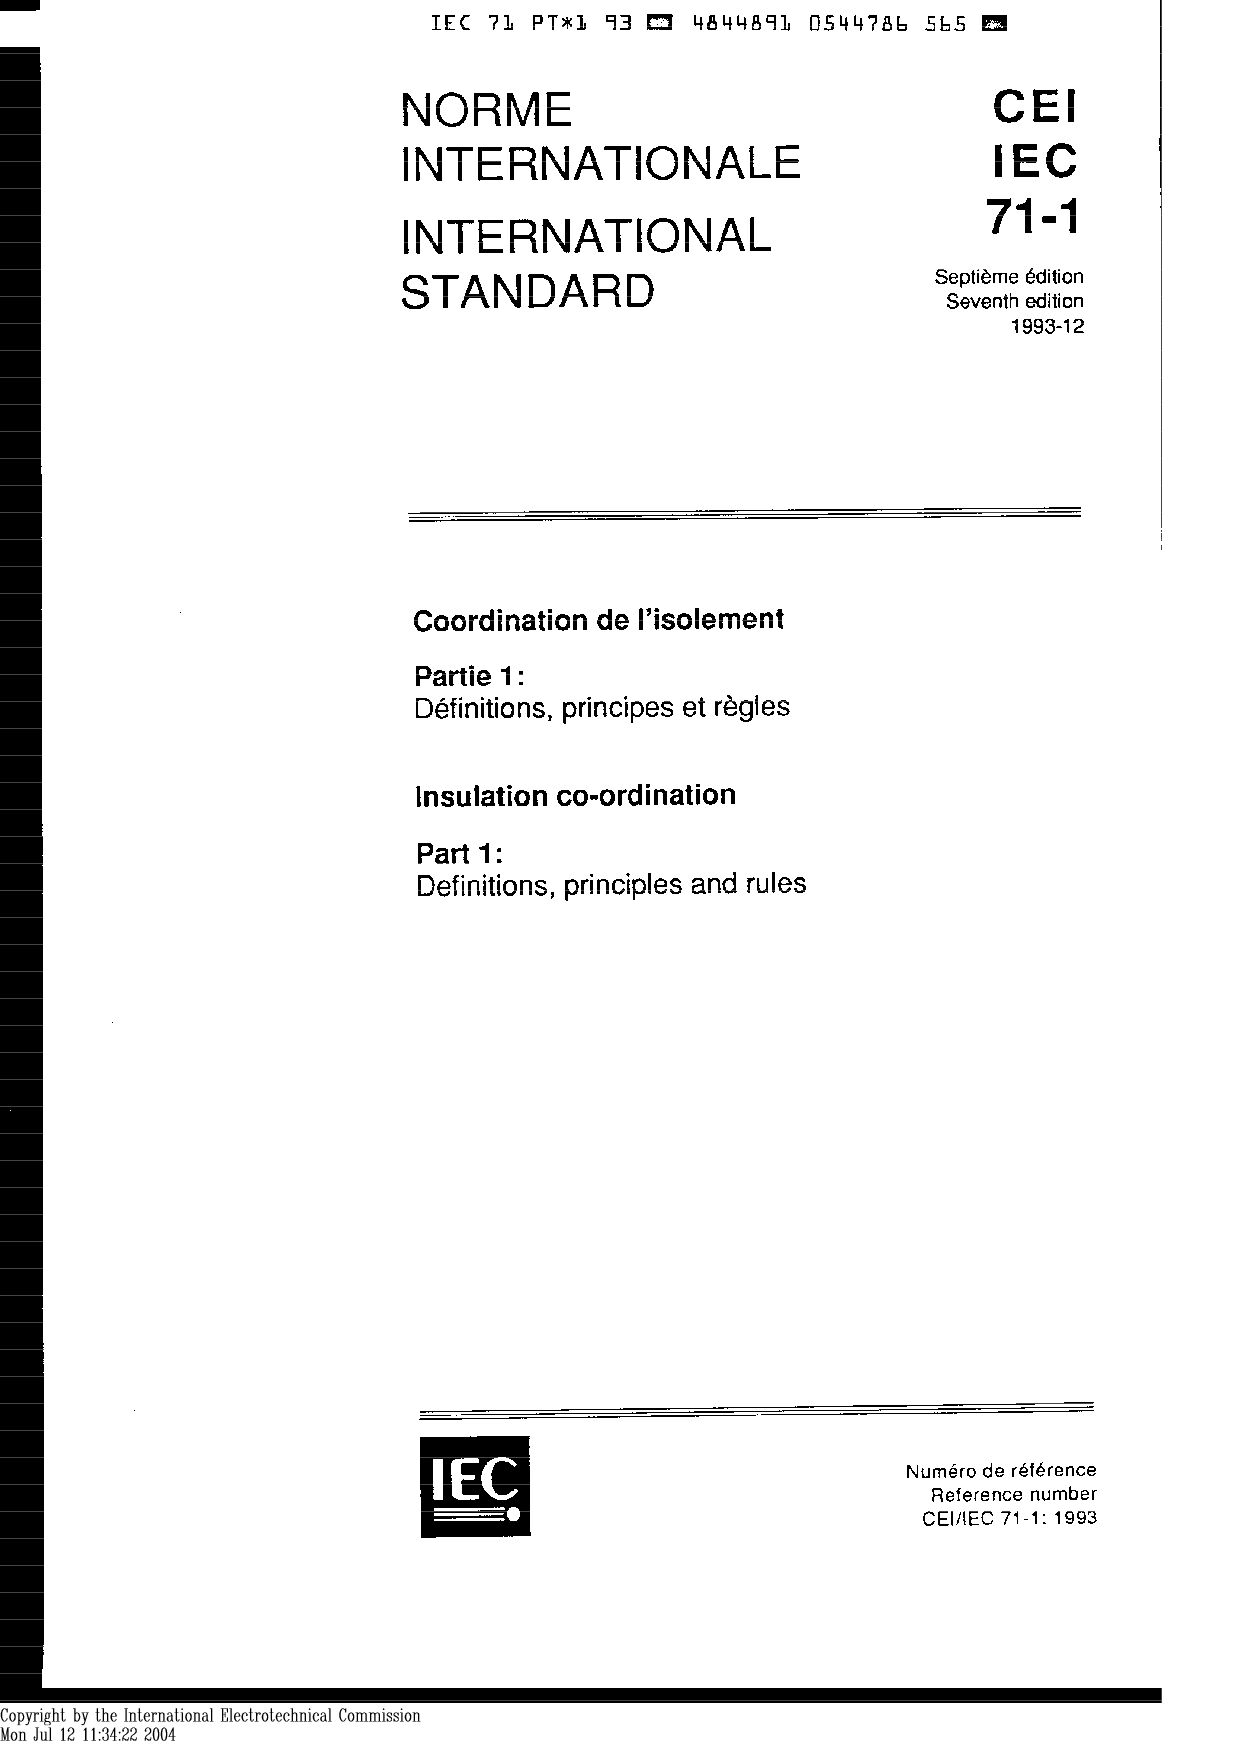 IEC 60071-1:1993